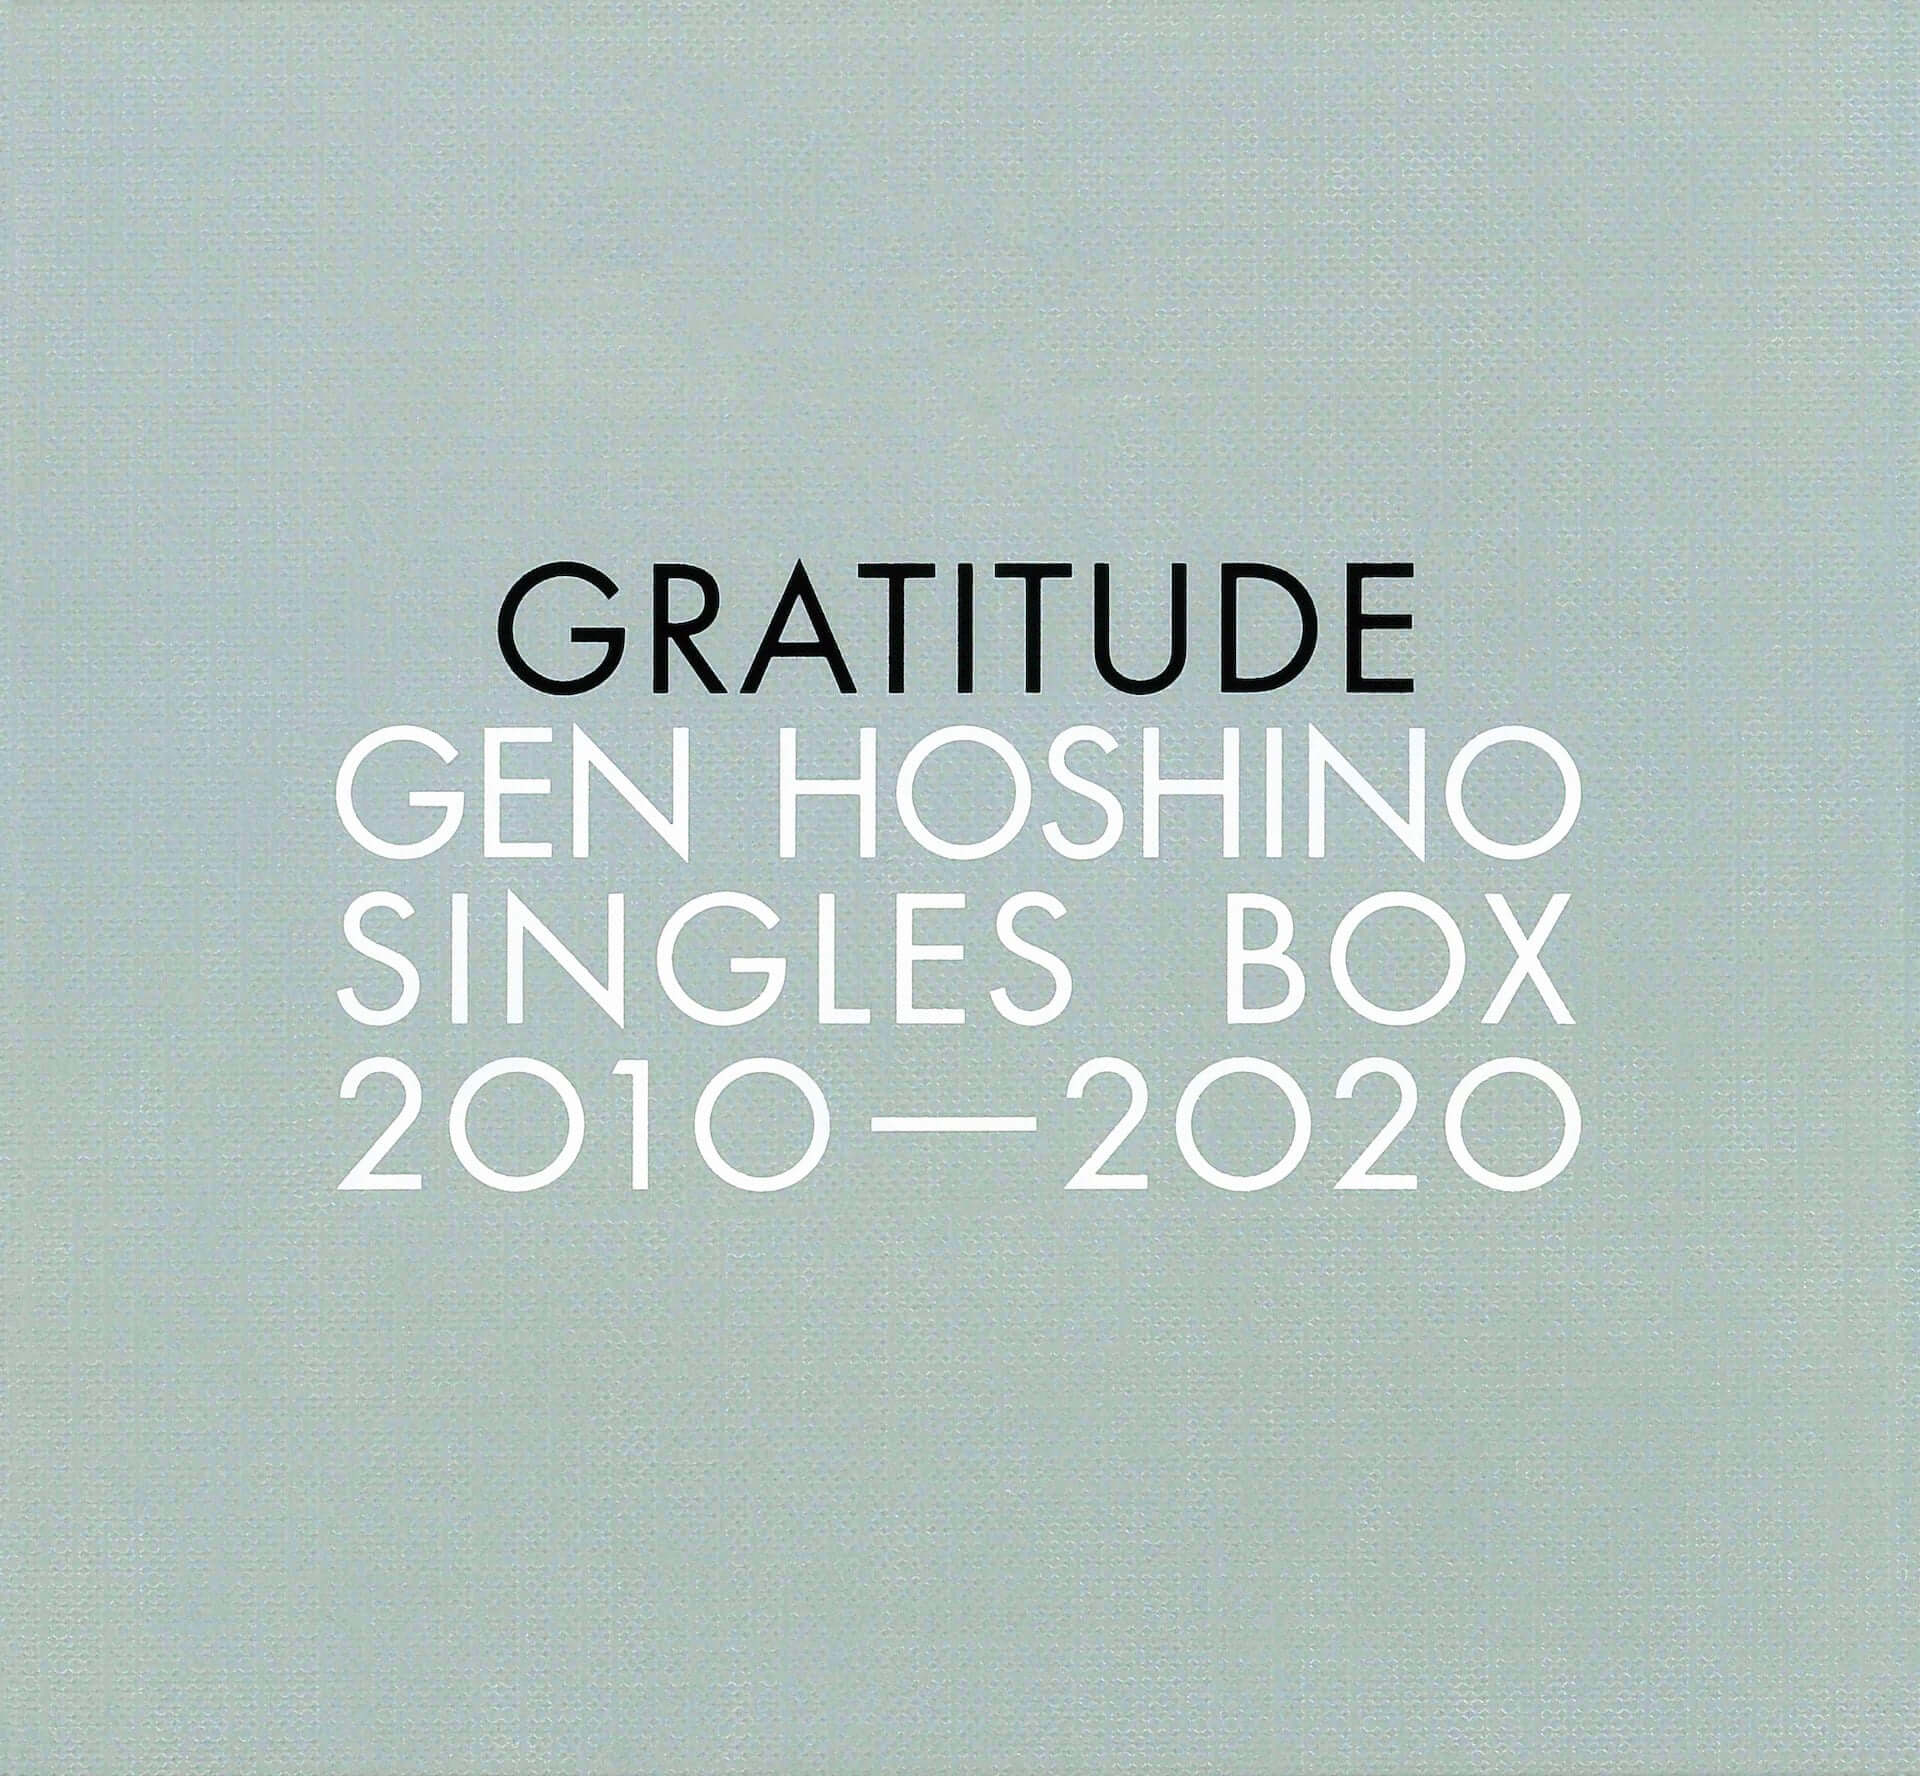 星野源のソロデビュー10周年記念作品『Gen Hoshino Singles Box “GRATITUDE”』の詳細が解禁！特典画像も公開 music200901_gen-hoshino_1-1920x1776